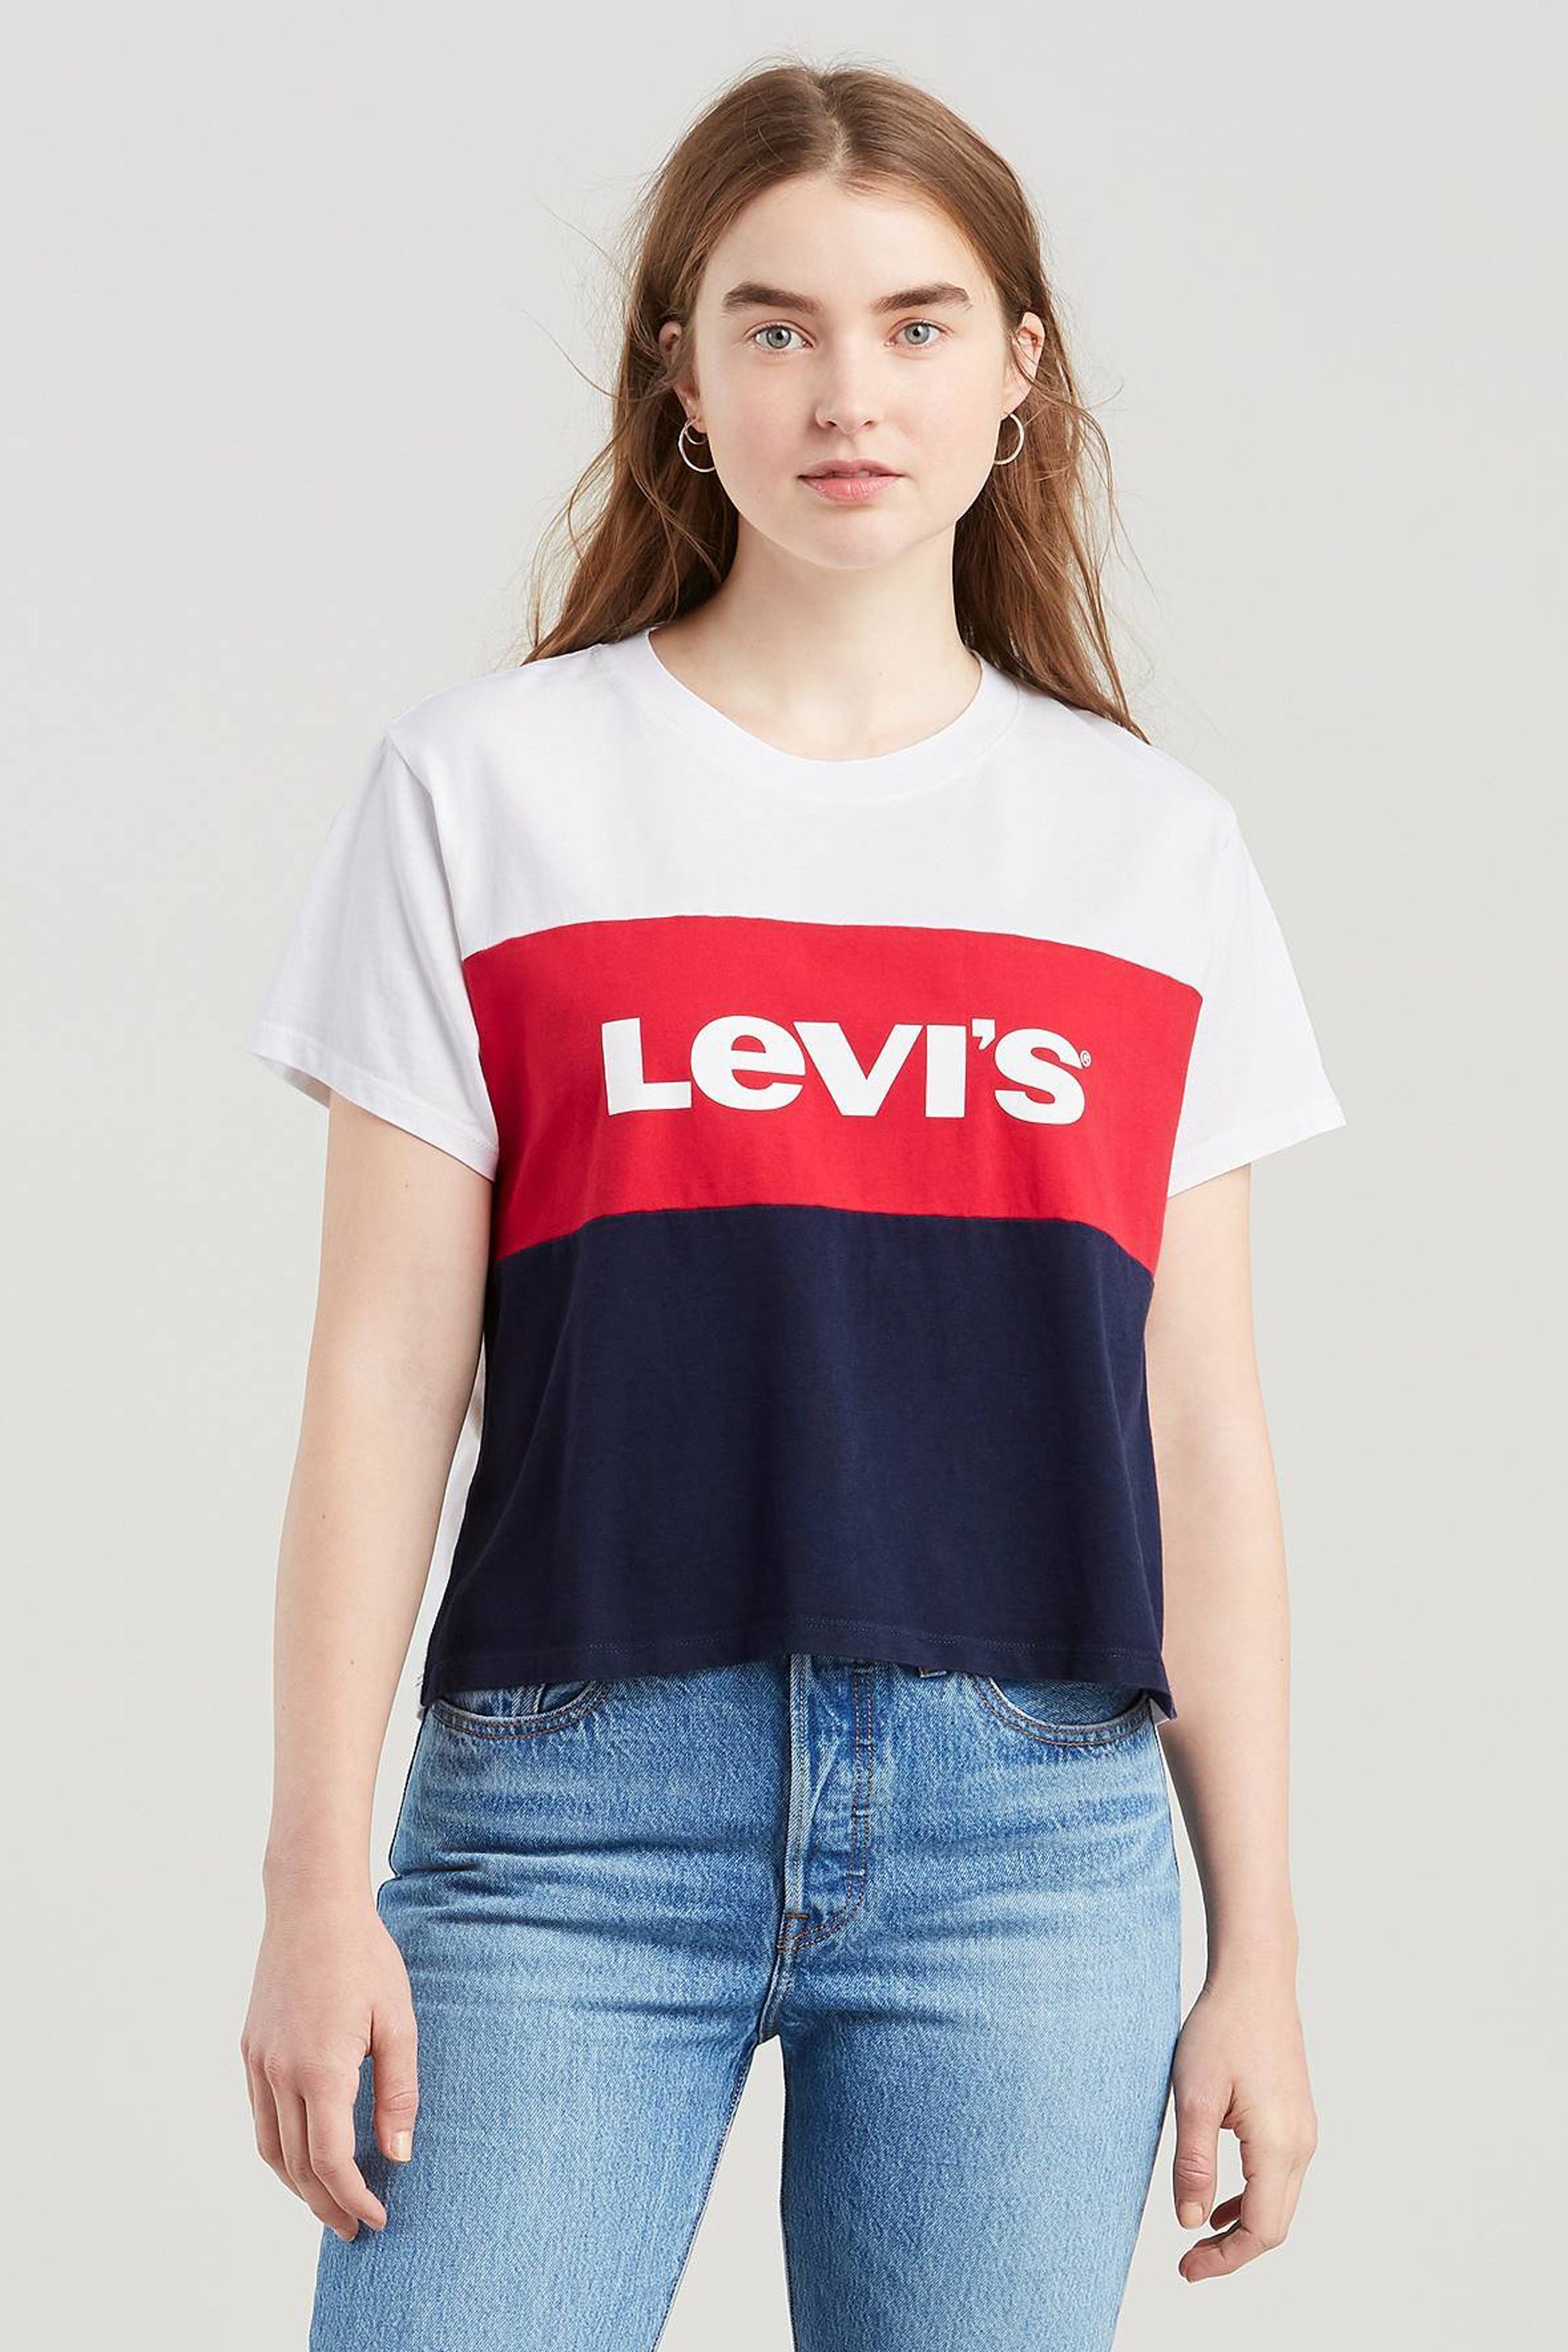 Купить футболку levis. Футболка левайс женская. Майка Levis женская. Levi's футболка женская. Levis футболка женская синяняя.